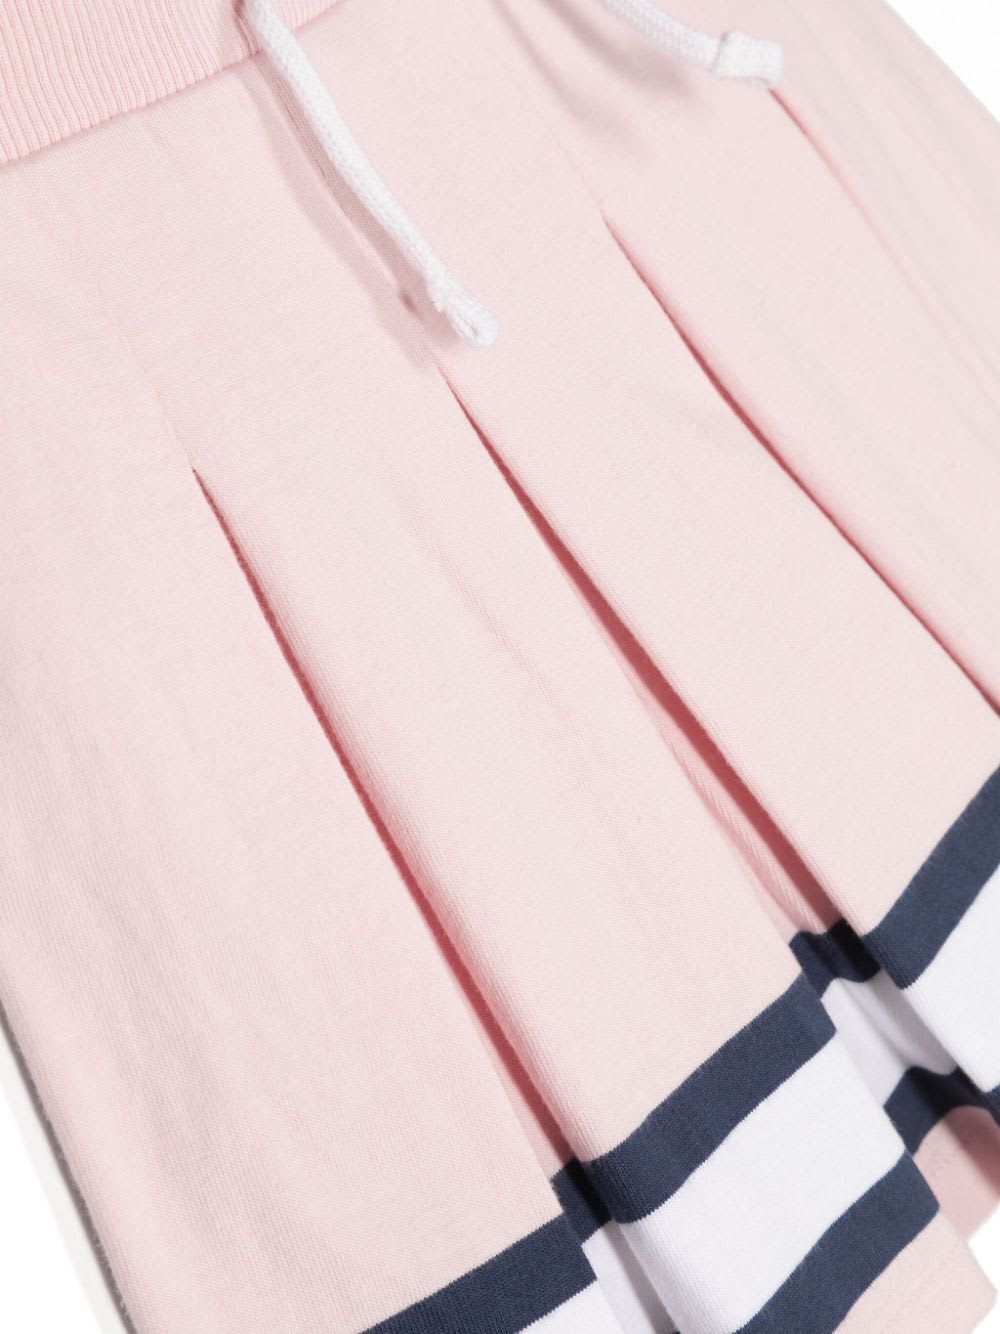 Shop Polo Ralph Lauren Pleatskirt Skirt Full In Hint Of Pink Multi